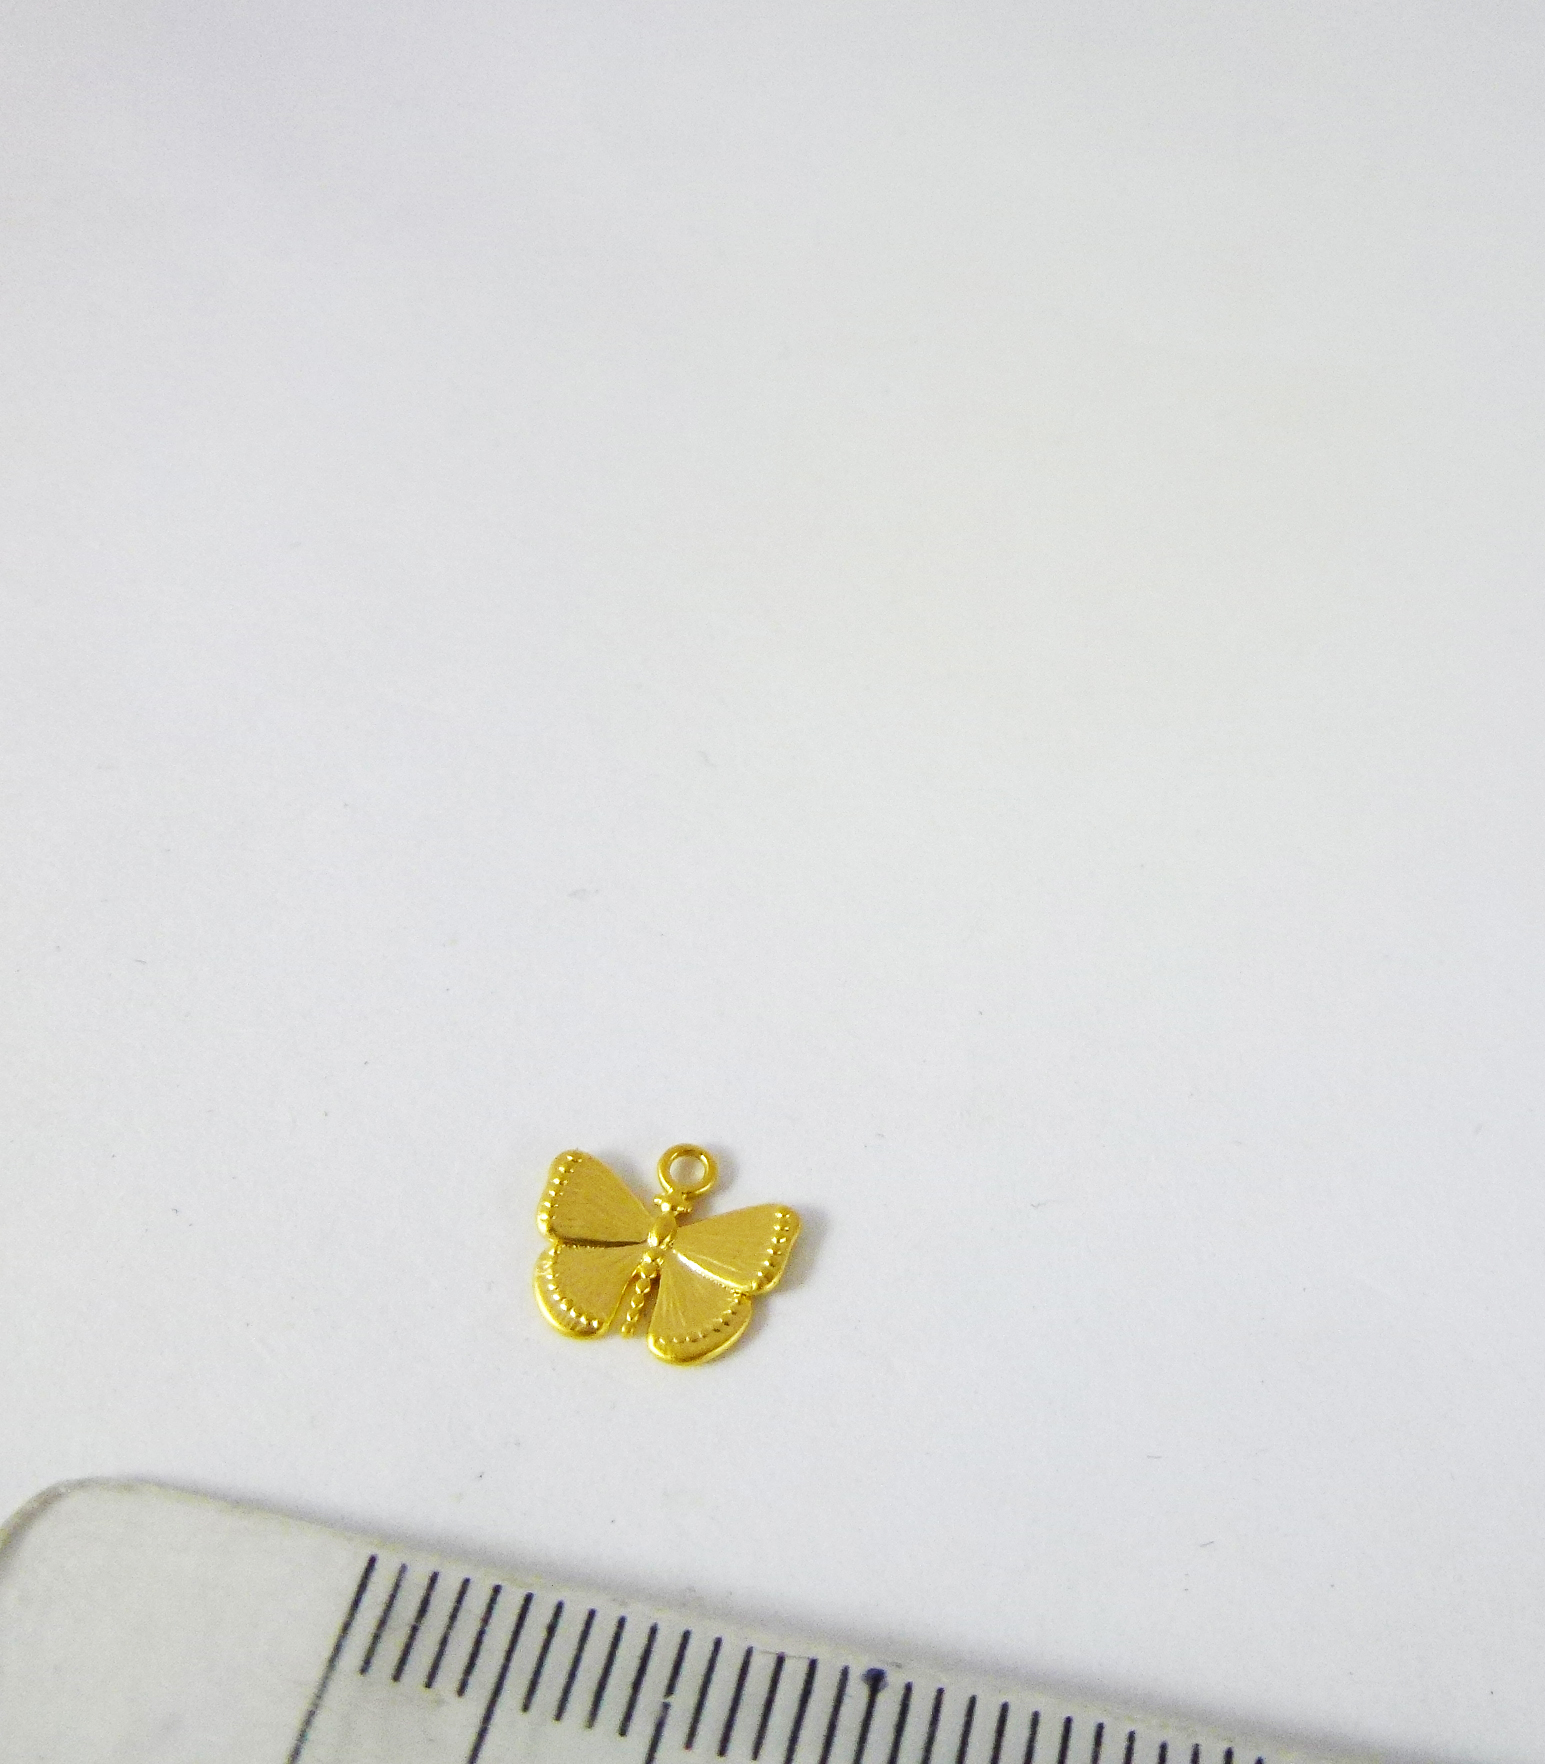 銅鍍霧金色單孔橫紋蝴蝶